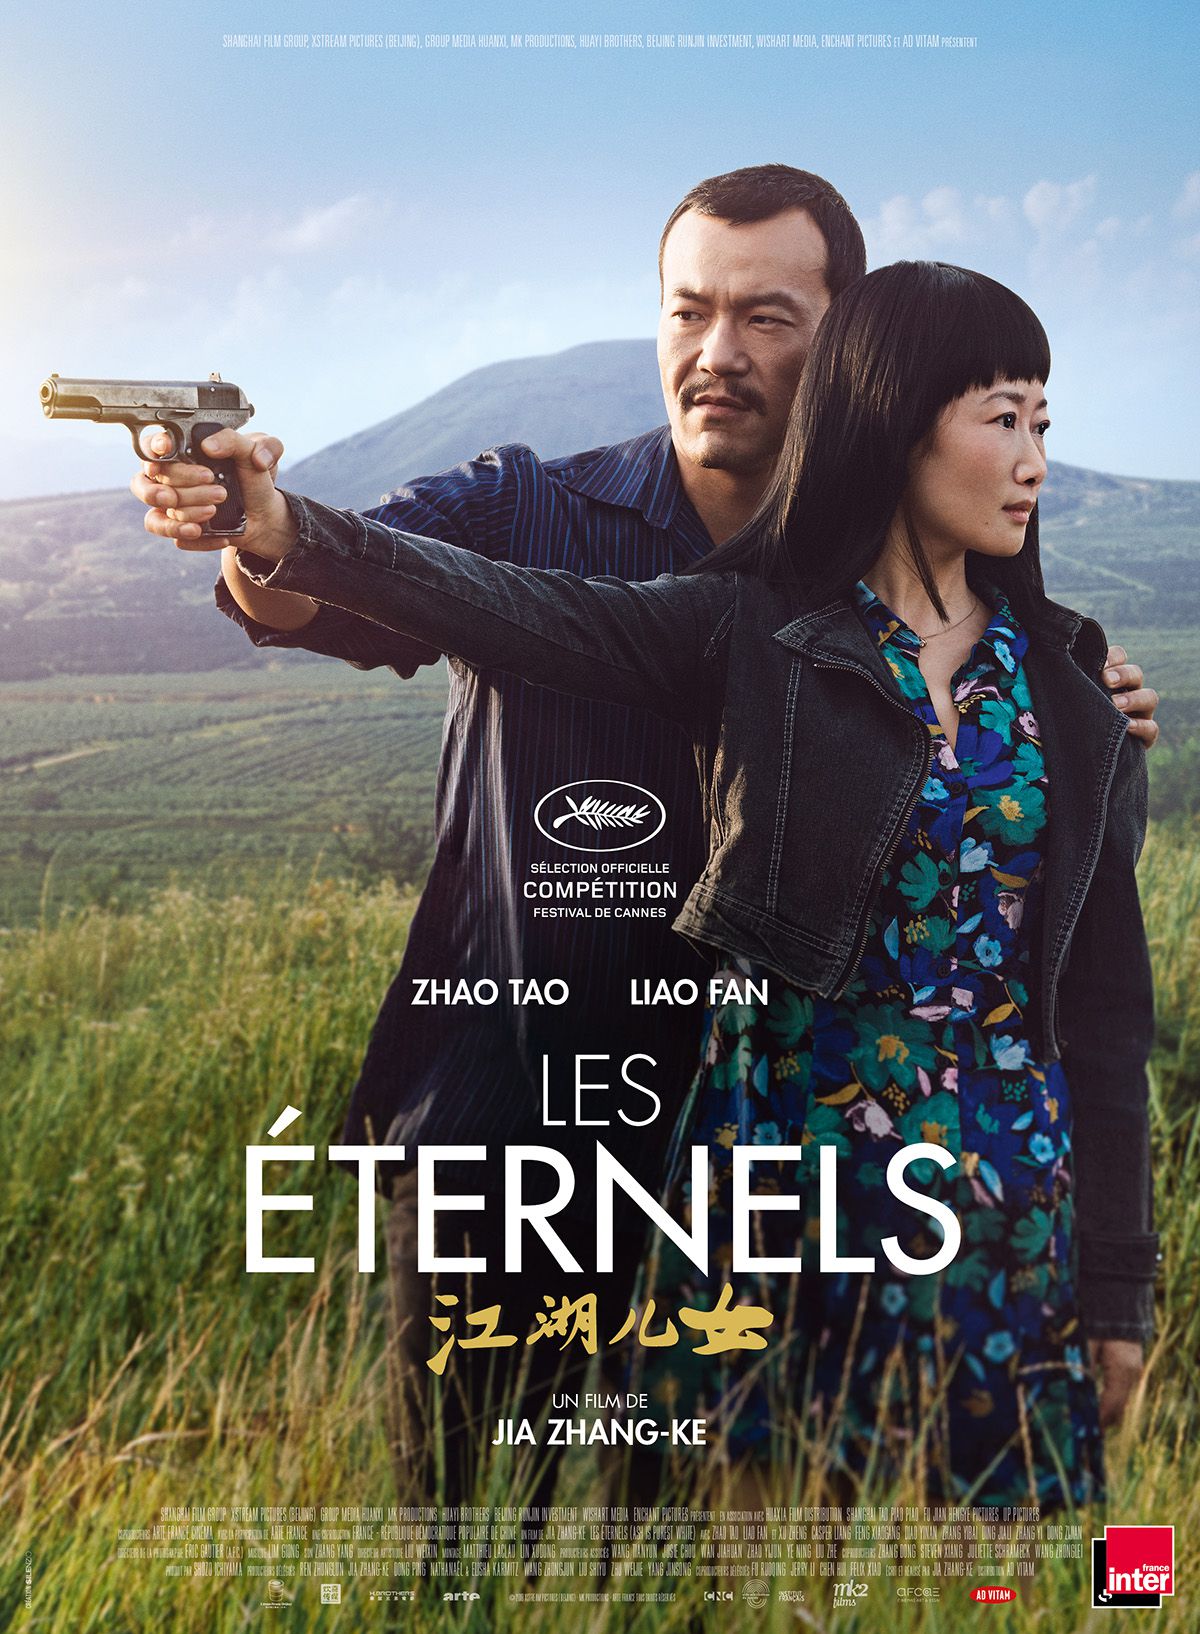 Les Éternels - Film (2019) streaming VF gratuit complet